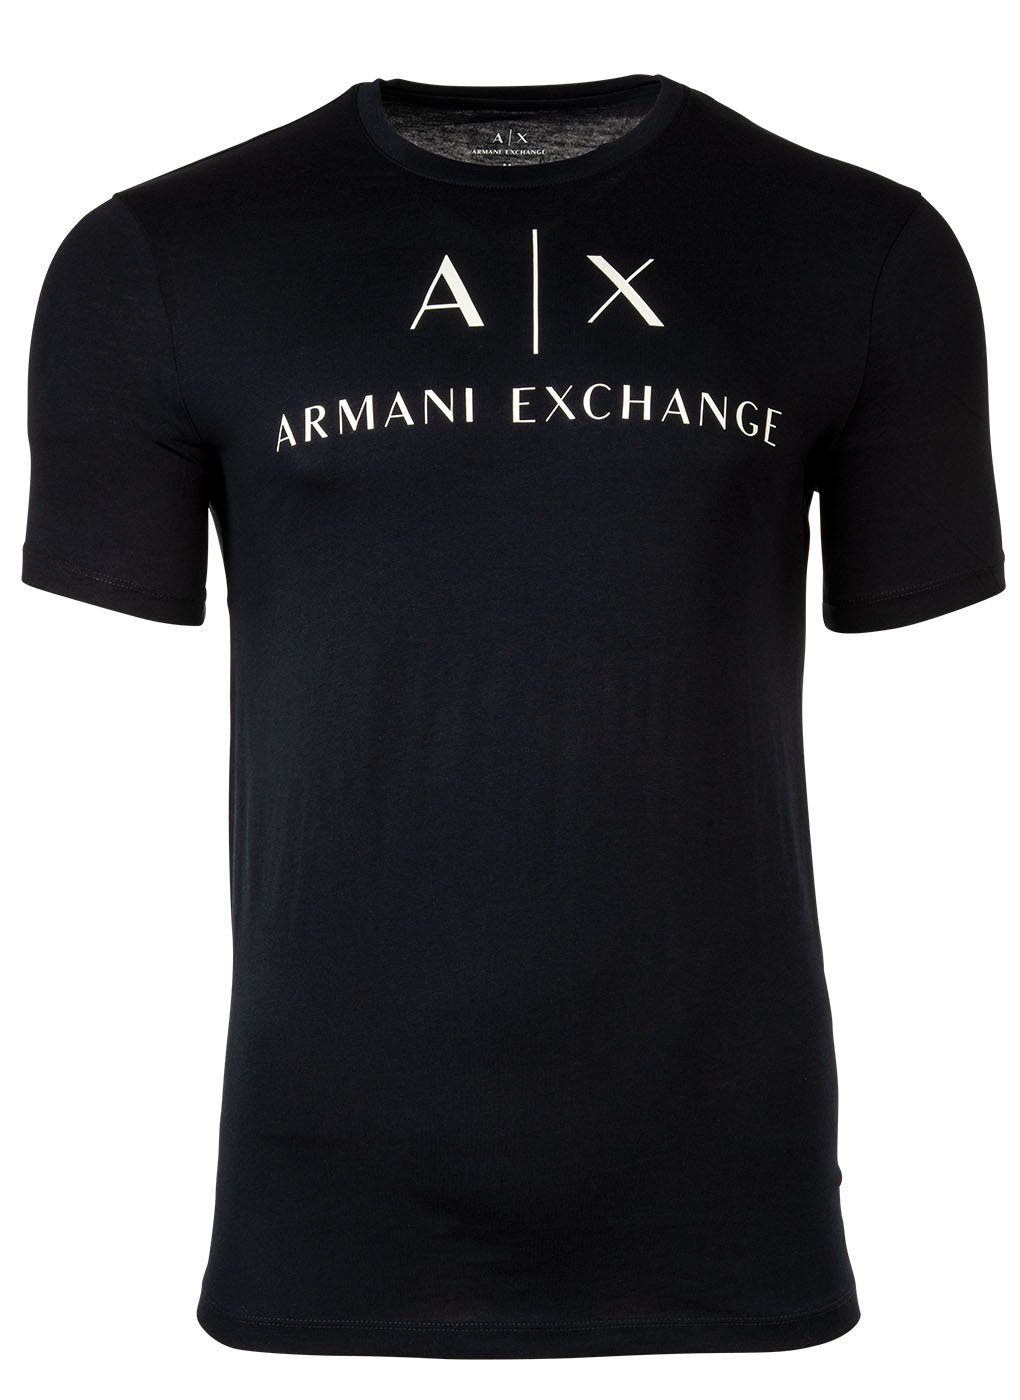 ARMANI EXCHANGE T-Shirt Herren T-Shirt - Schriftzug, Rundhals, Cotton Marine